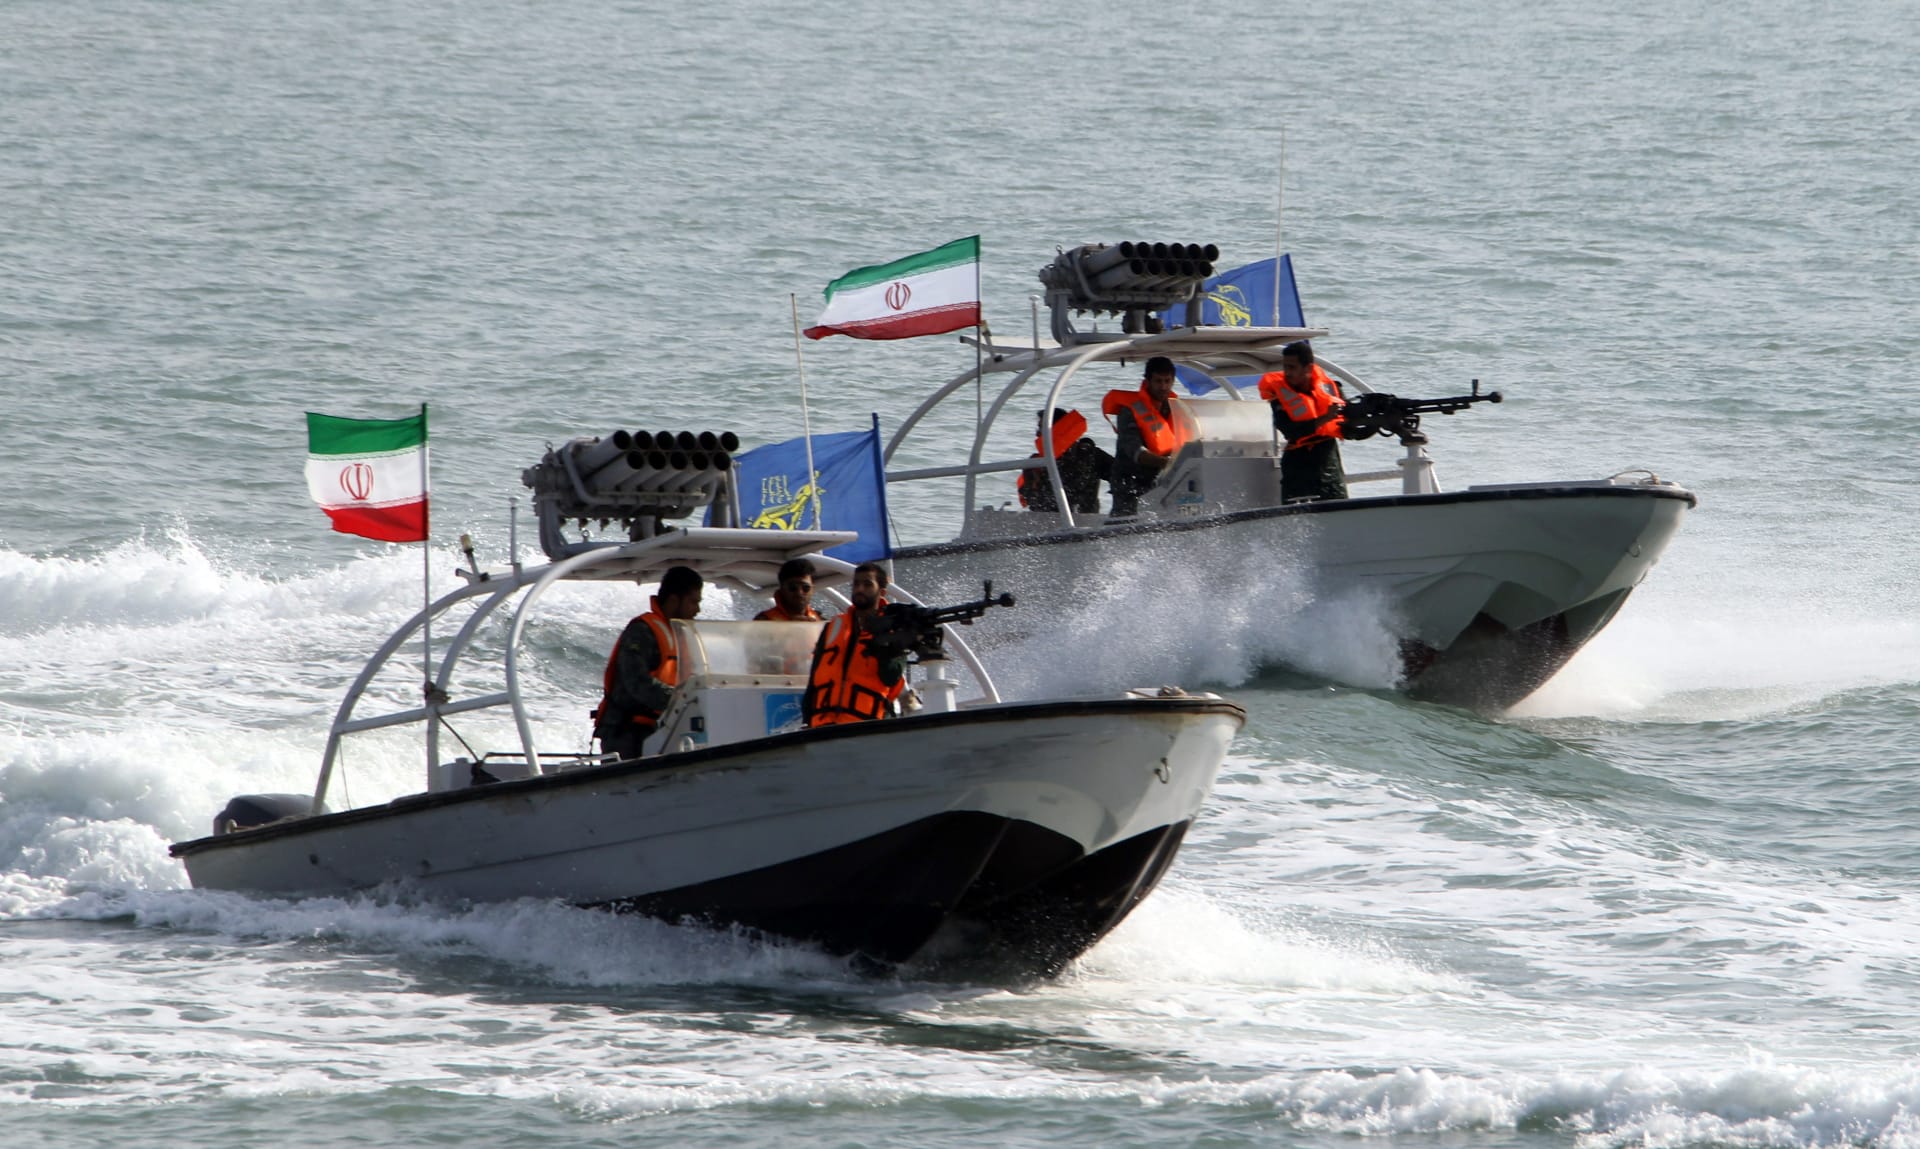 إيران تذكر أمريكا بـ"الرحلة 655": لن ننسى وعليكم أن تغادروا المنطقة